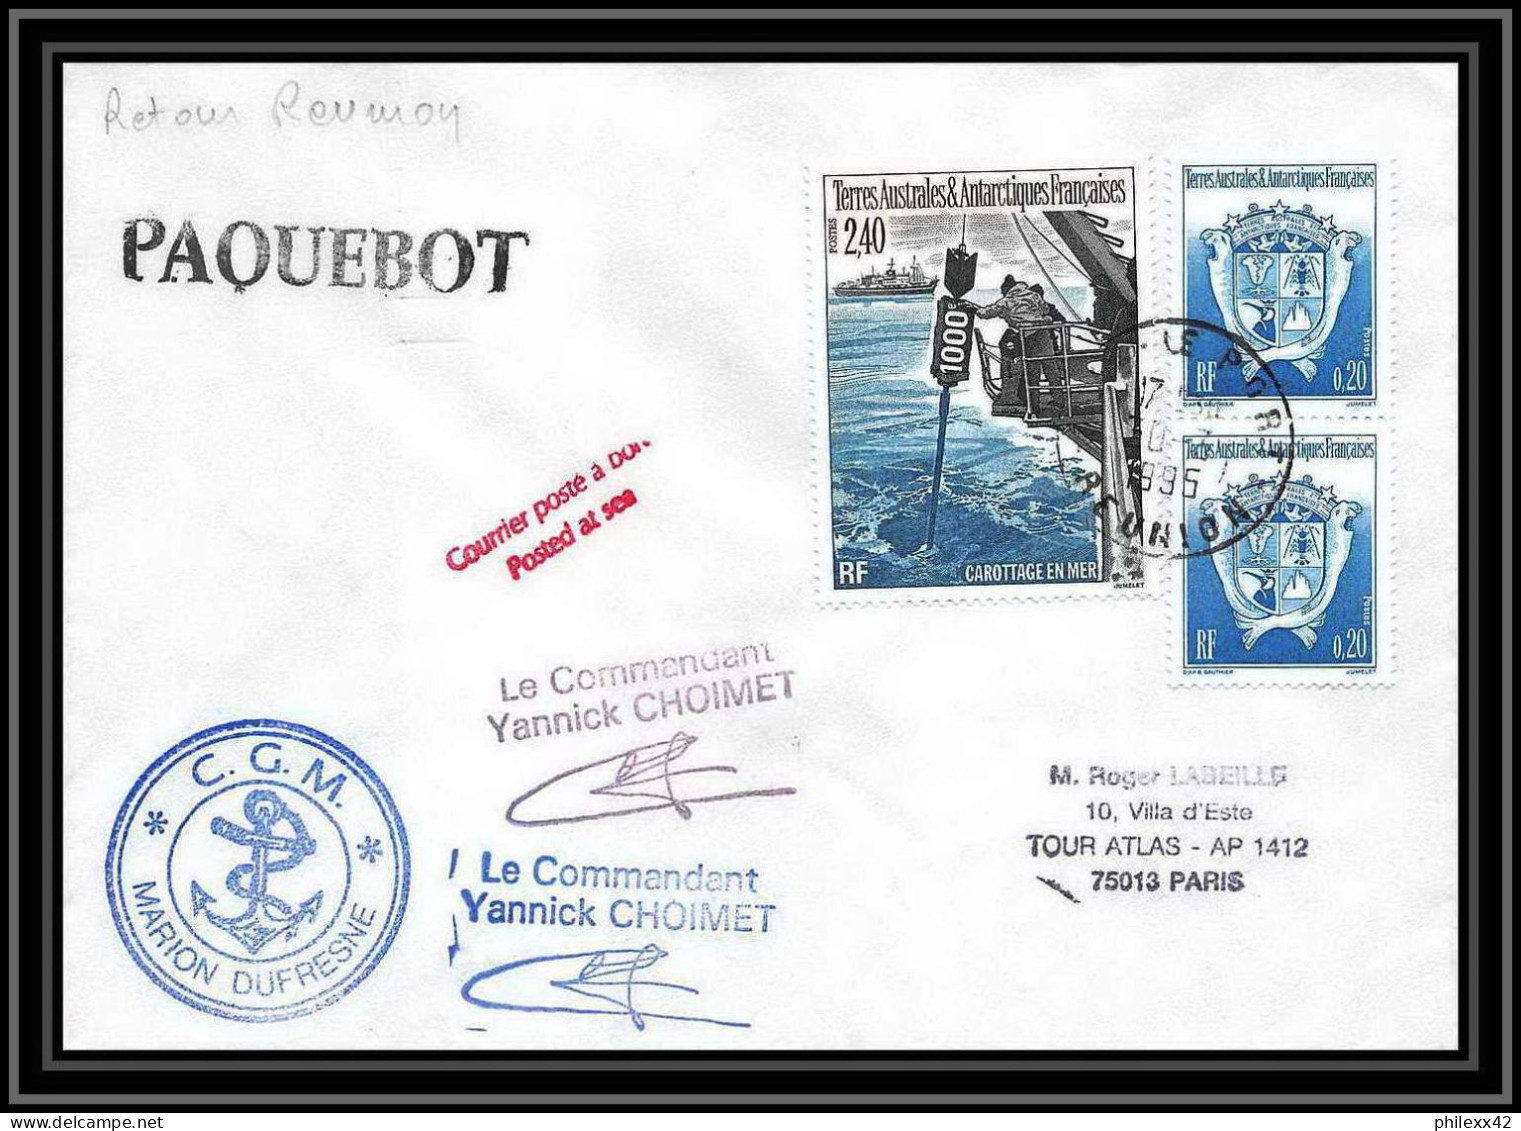 2346 ANTARCTIC Terres Australes TAAF Lettre Cover Dufresne 2 Retour Réunion 30/7/1995 Paquebot Signé Signed Choimet - Expéditions Antarctiques